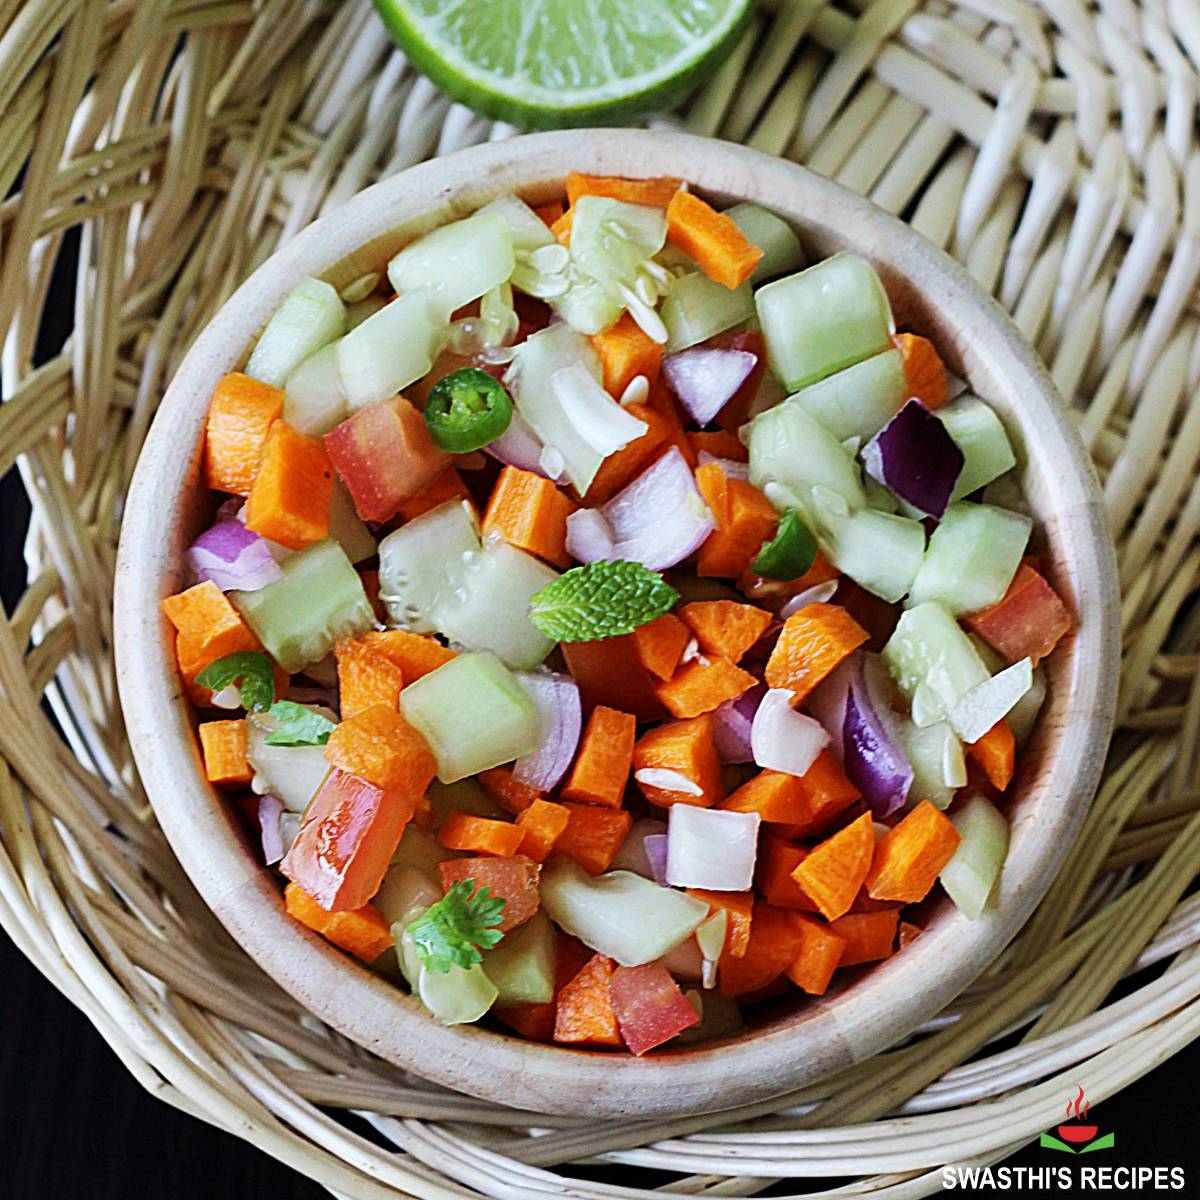 10 deliciously easy make-at-home salad bowls